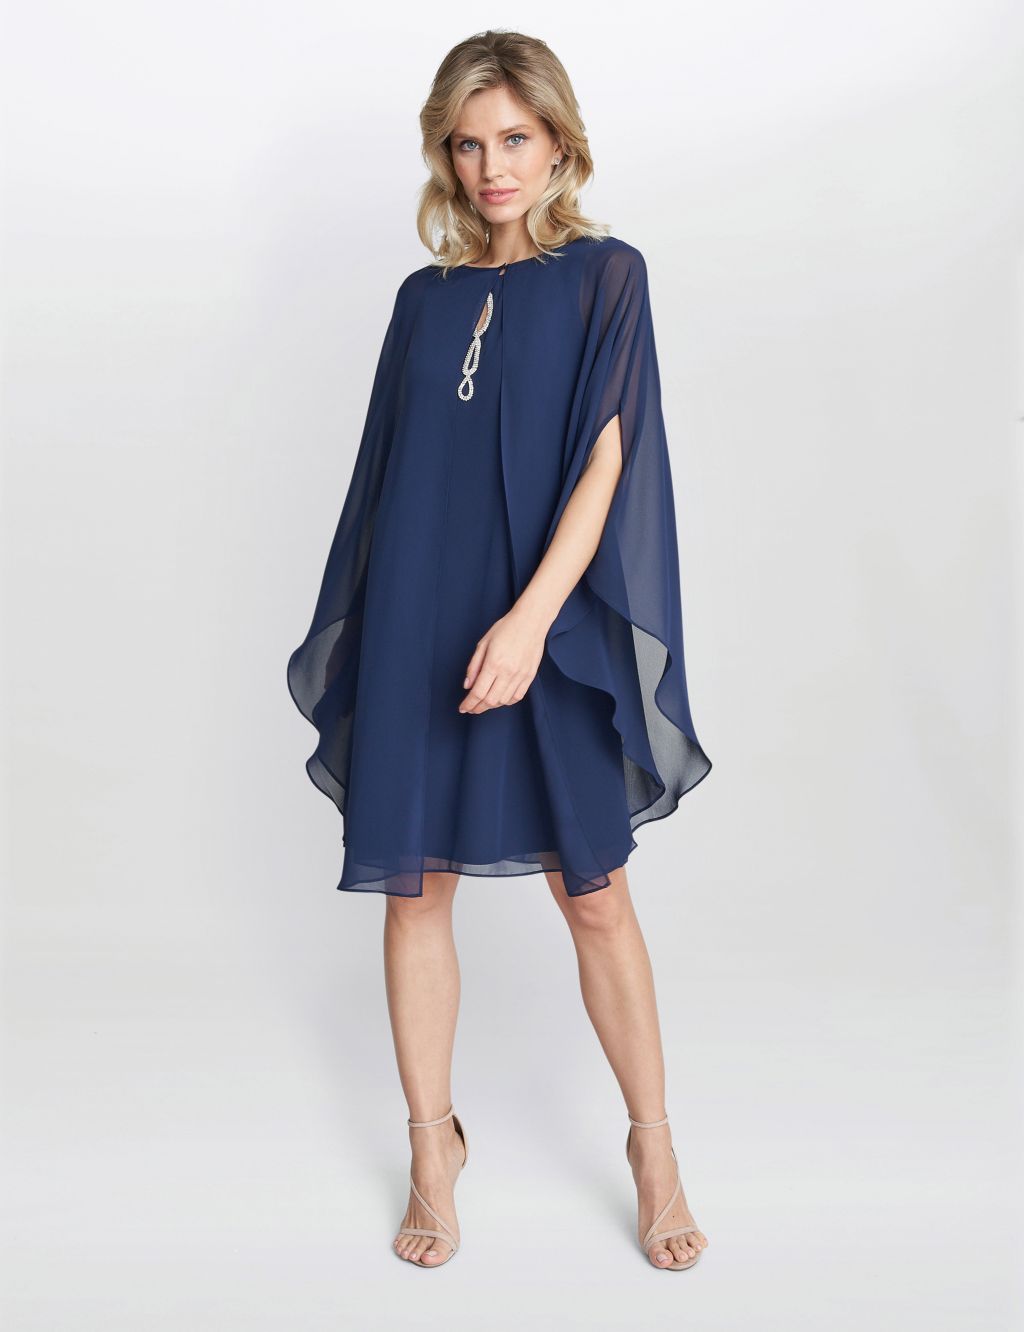 Chiffon Embellished Shift Dress with Cape | Gina Bacconi | M&S